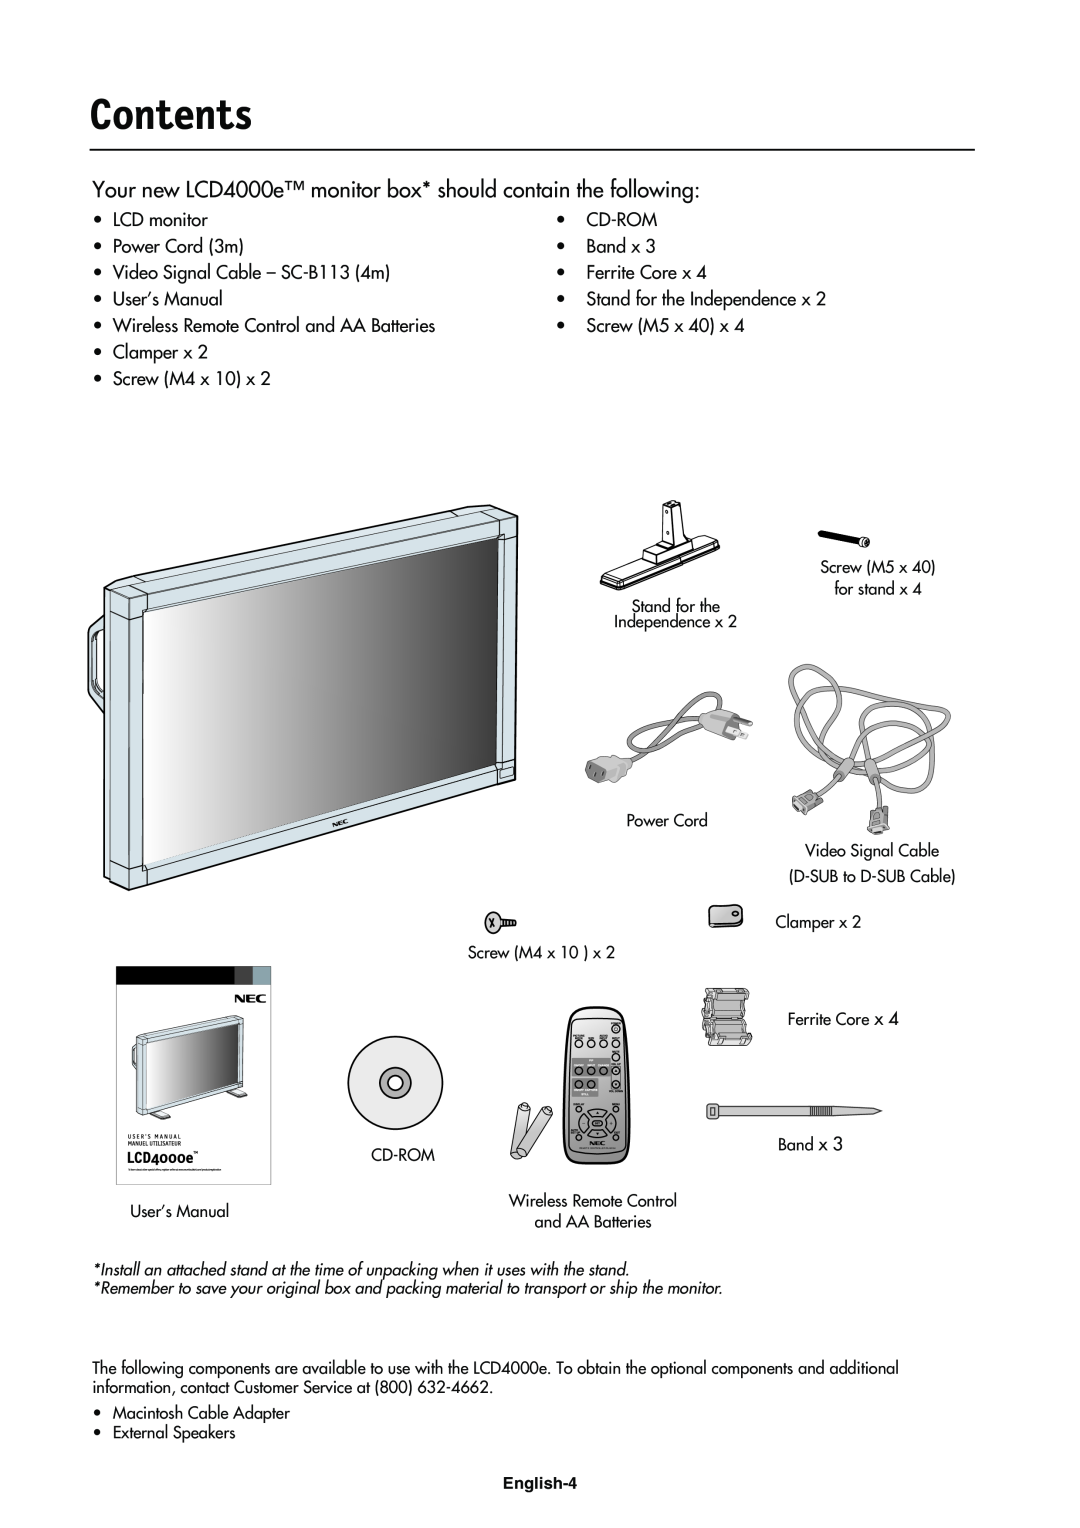 NEC LCD4000e manual Contents 